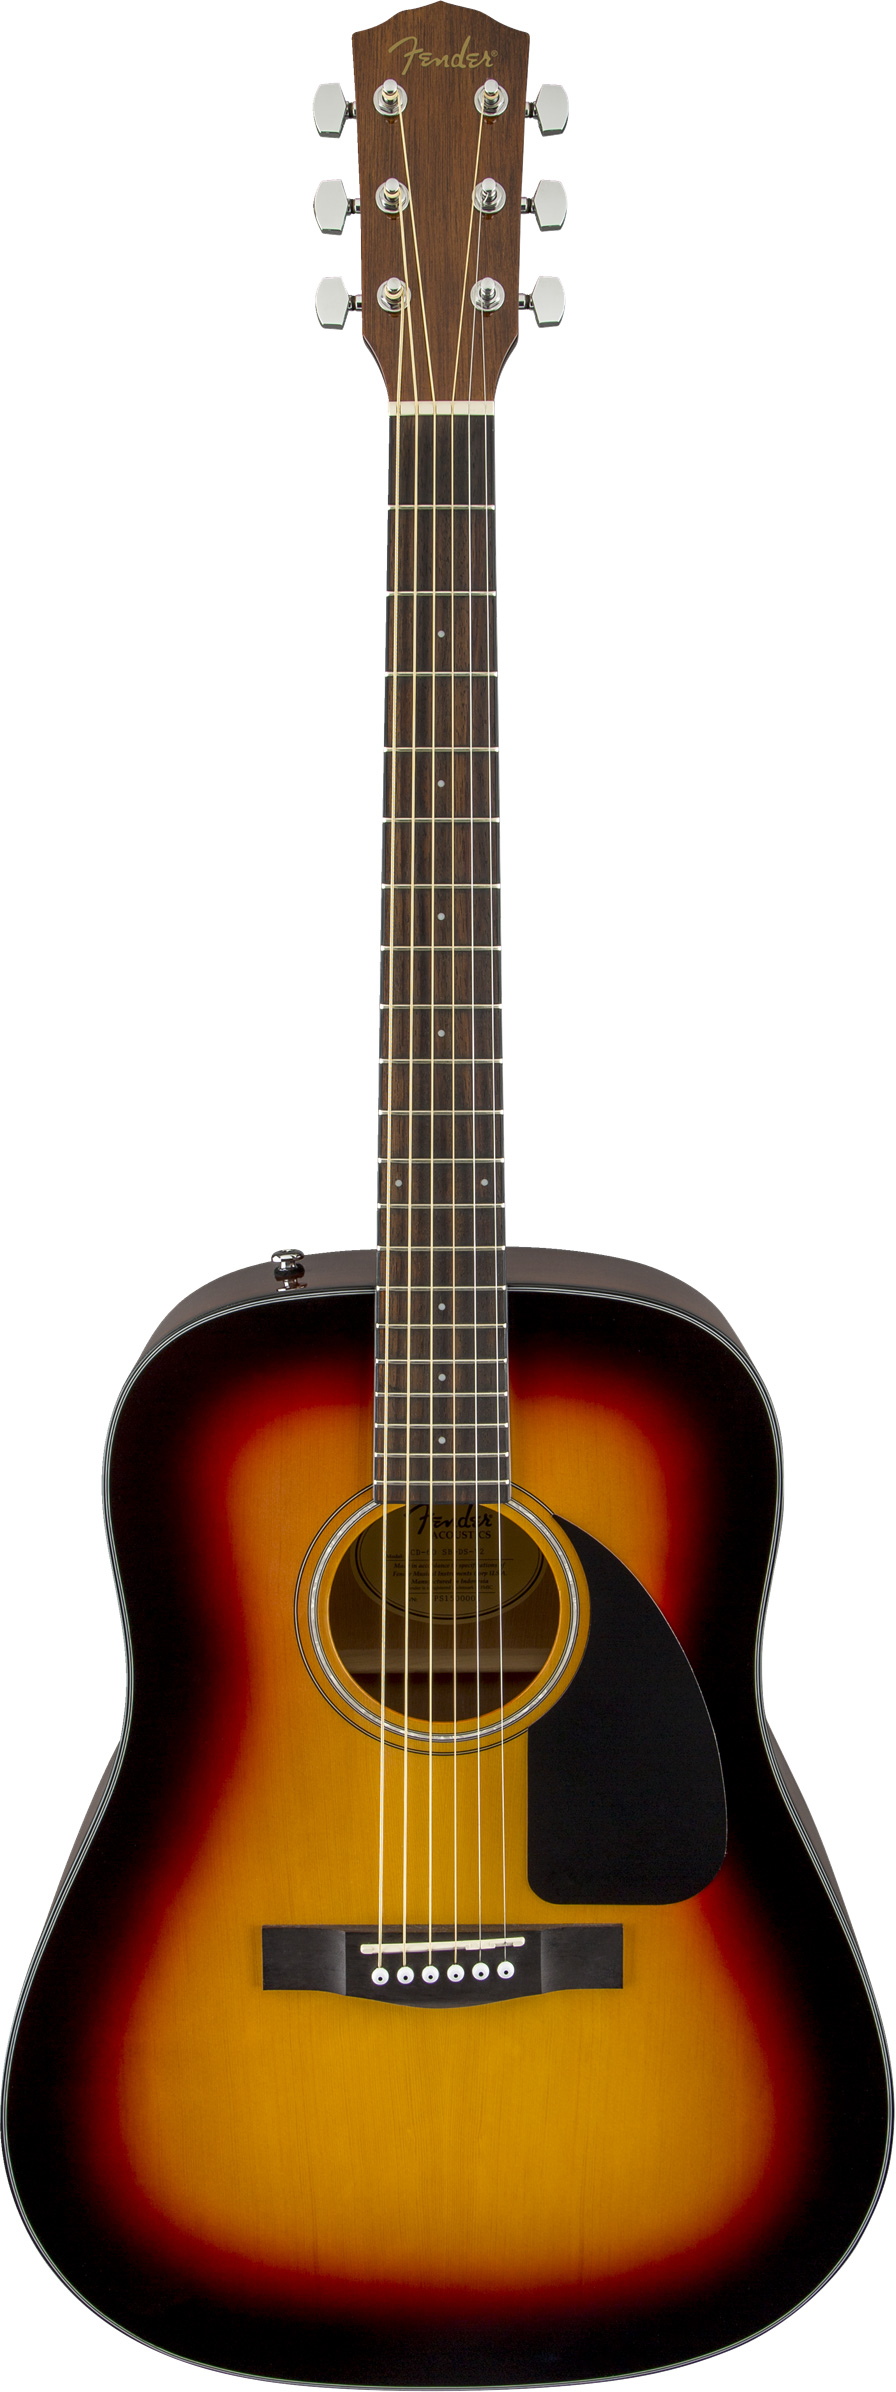 Fender CD-60 Dreadnought Acoustic Guitar - Sunburst